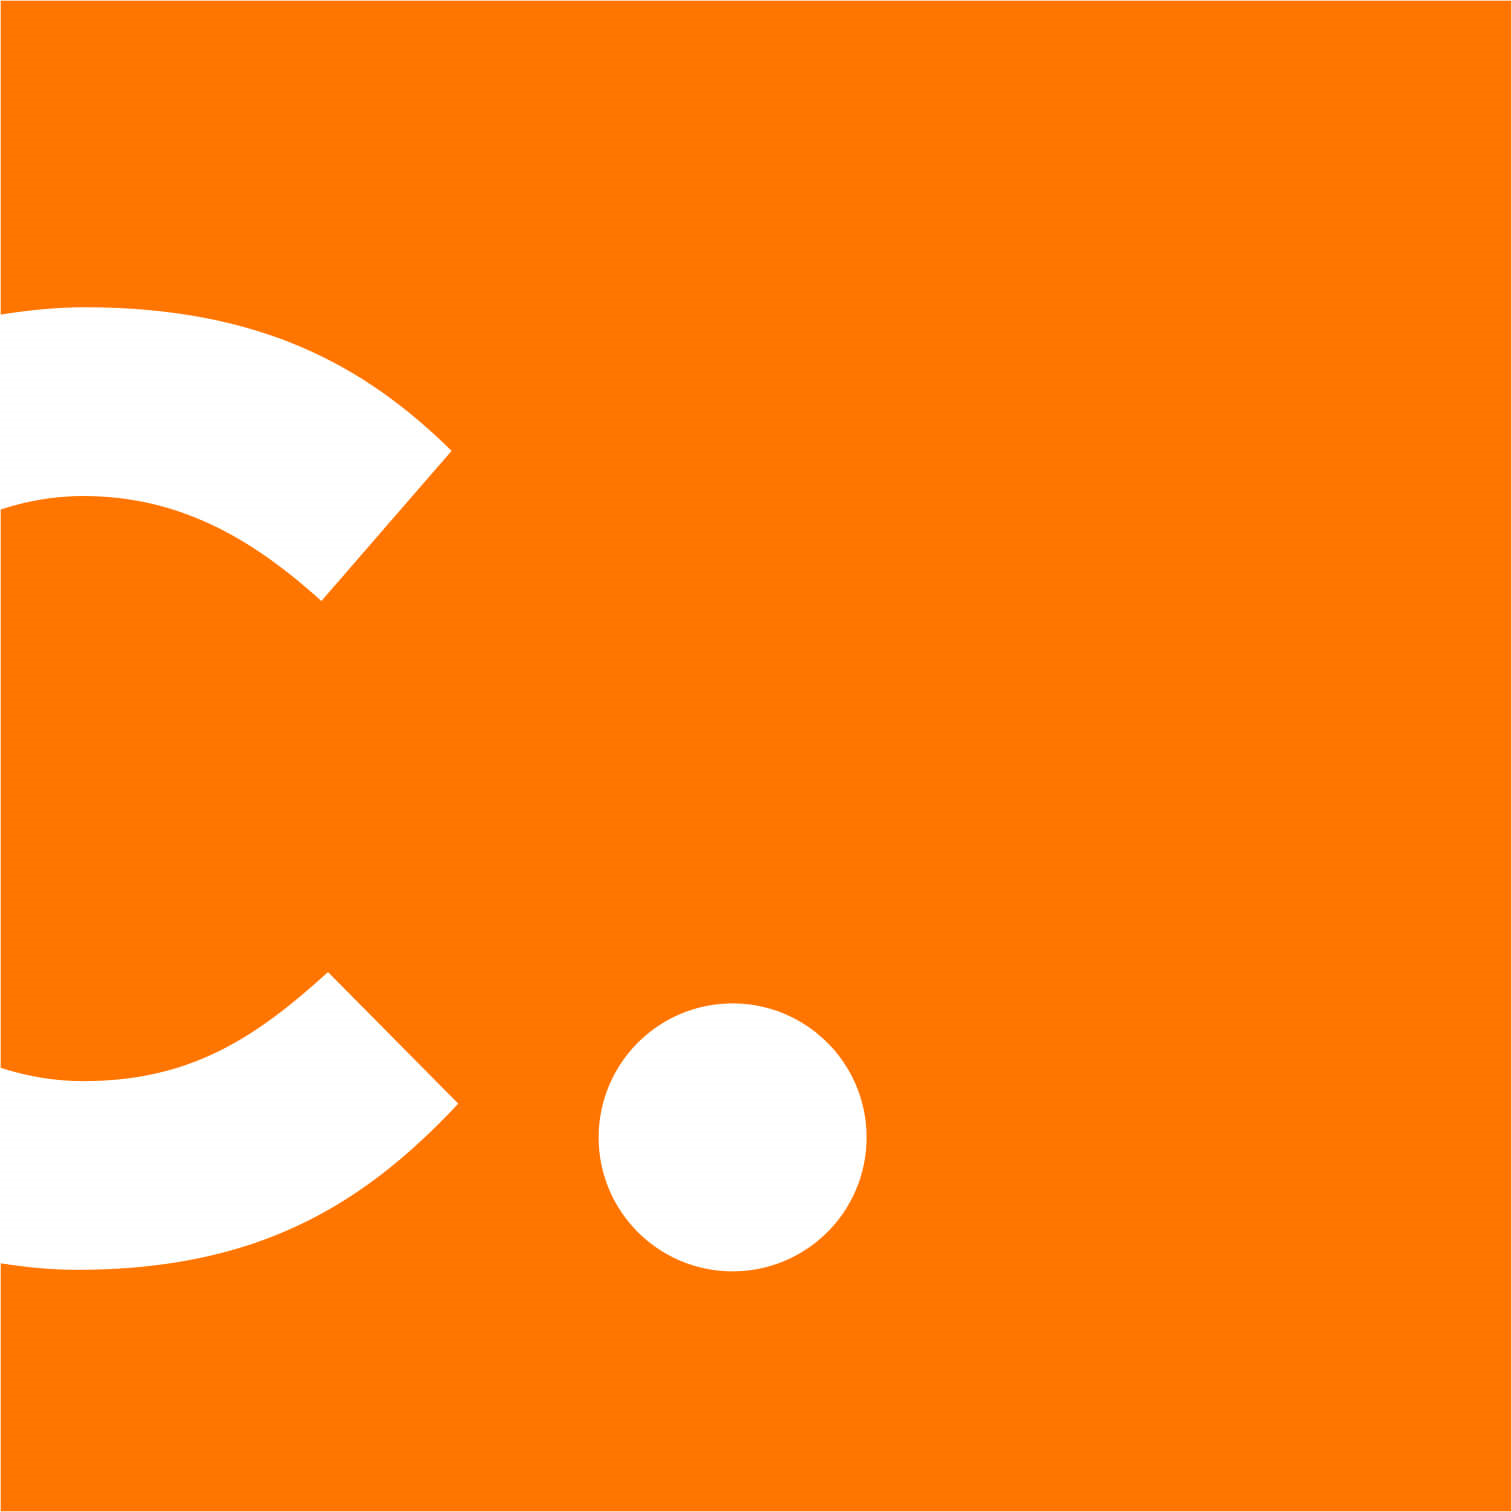 Concept Services logo